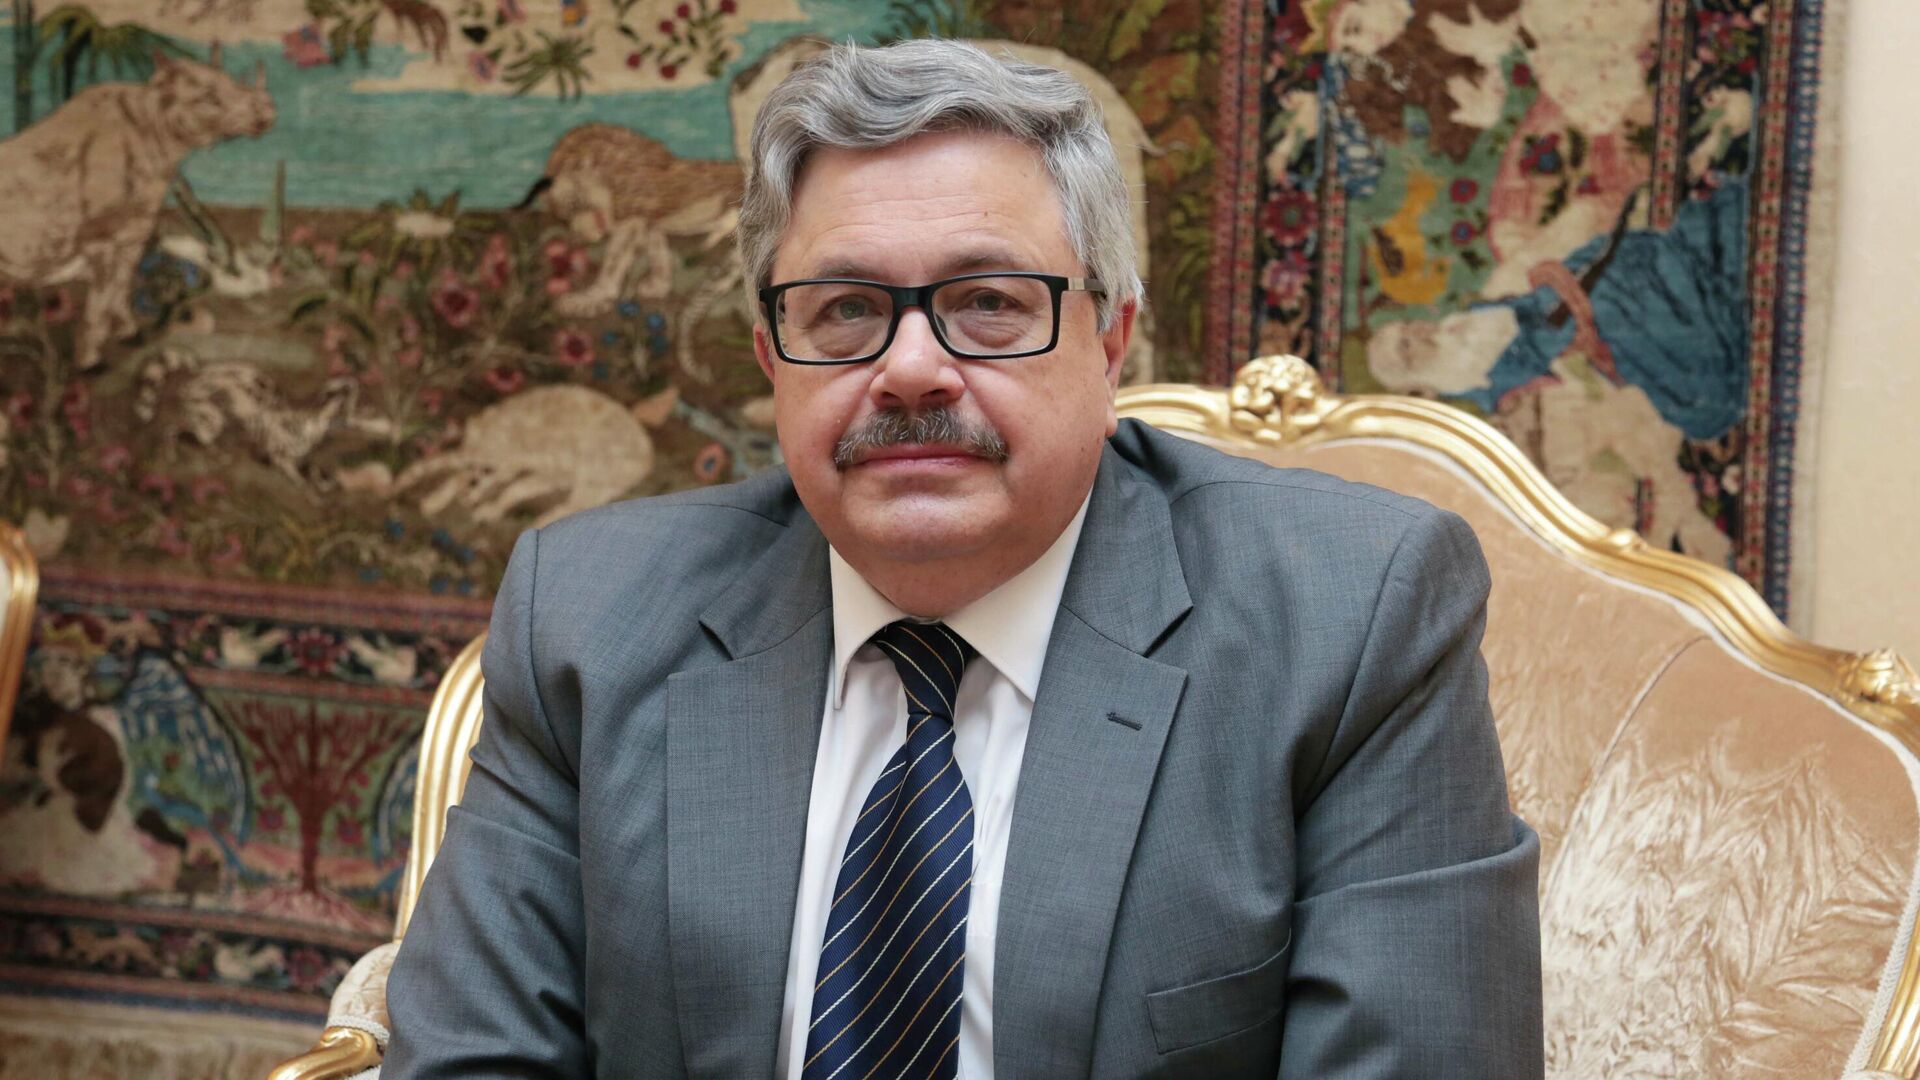 Посол России в Турции: Вы даже не представляете себе, насколько болезненно поставки беспилотников Украине воспринимаются в российском обществе  